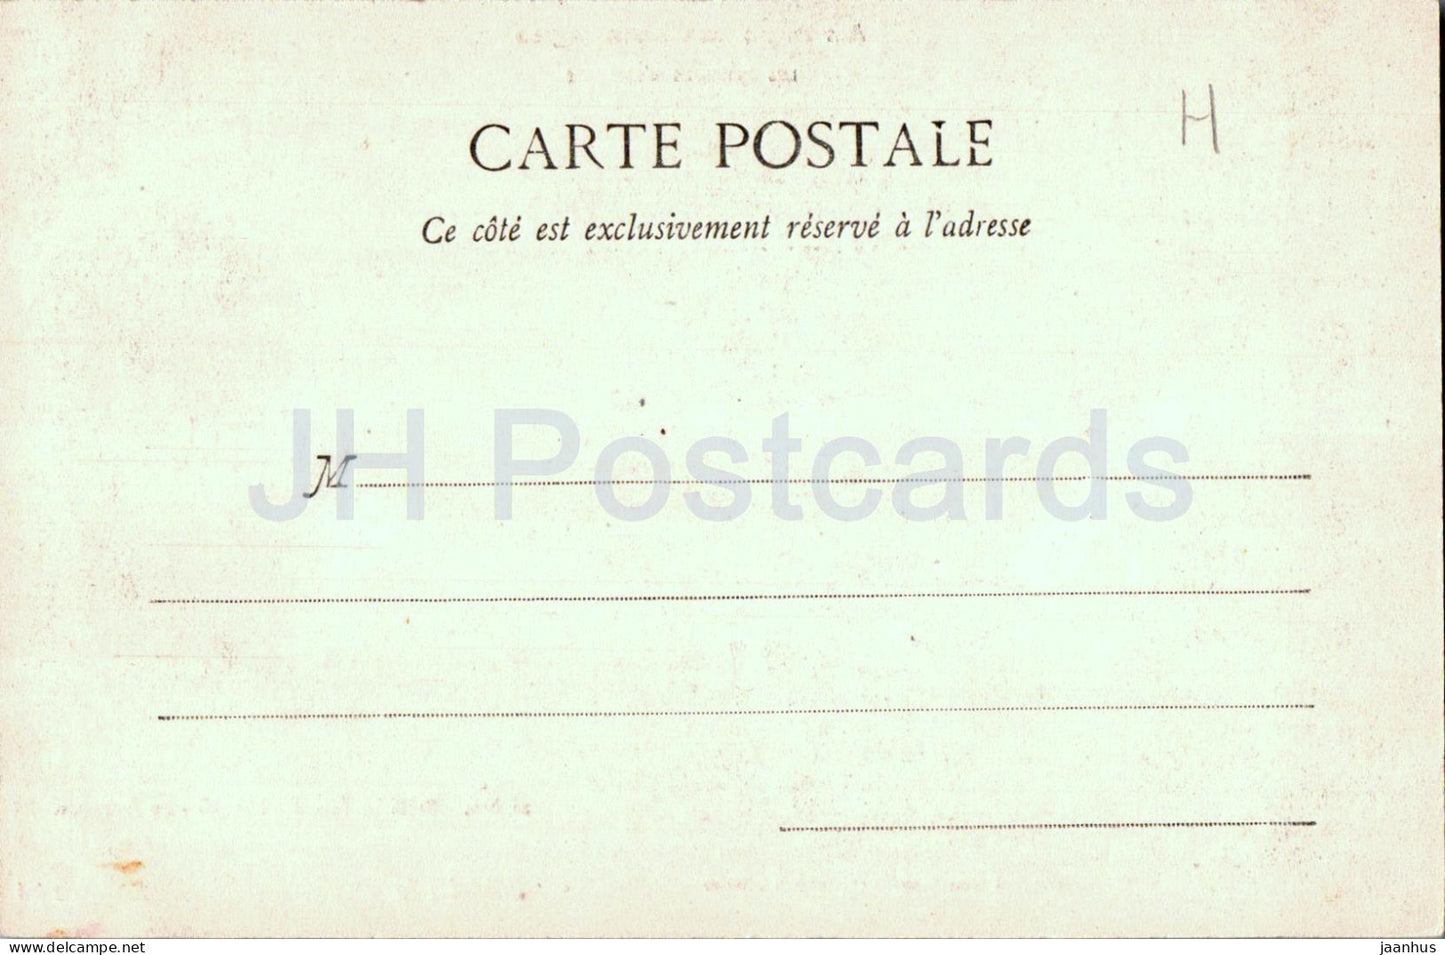 St Martin D'Ablois - Le Sourdon - 28 - alte Postkarte - Frankreich - unbenutzt 